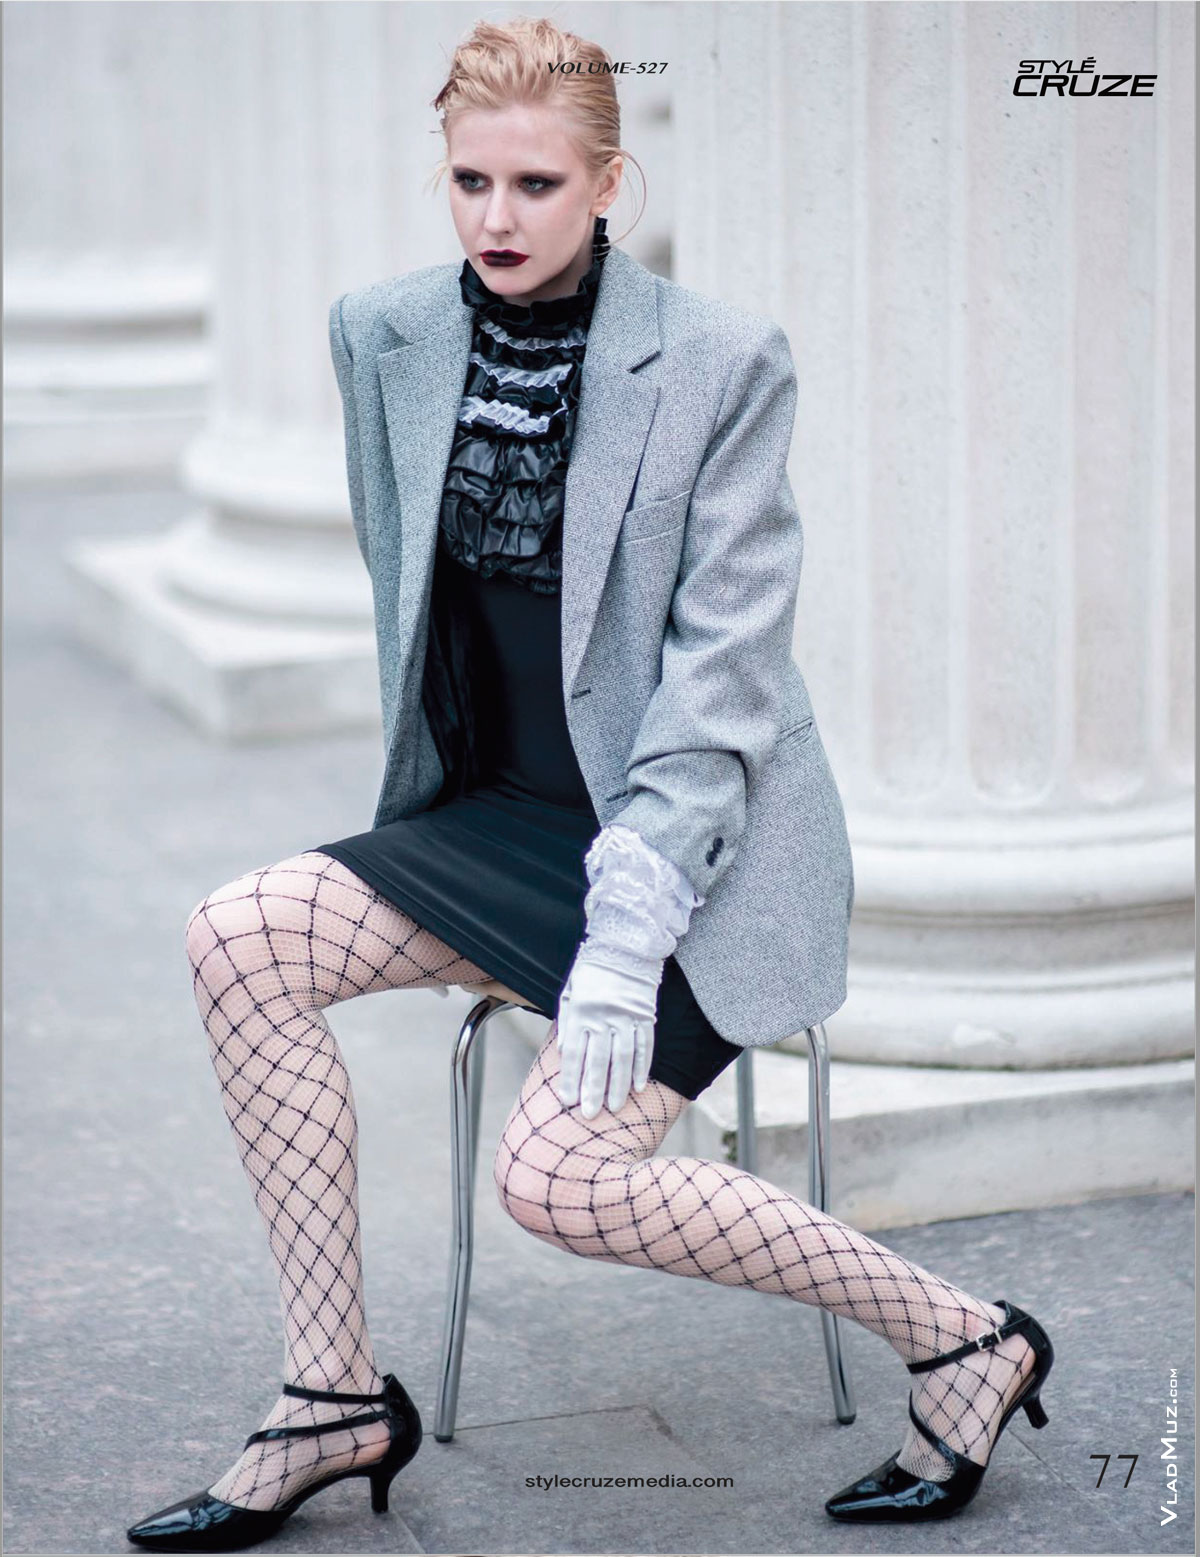 Фото девушки-модели, сидя на стуле, из серии модных фотографий для журнала Style Cruze Magazine